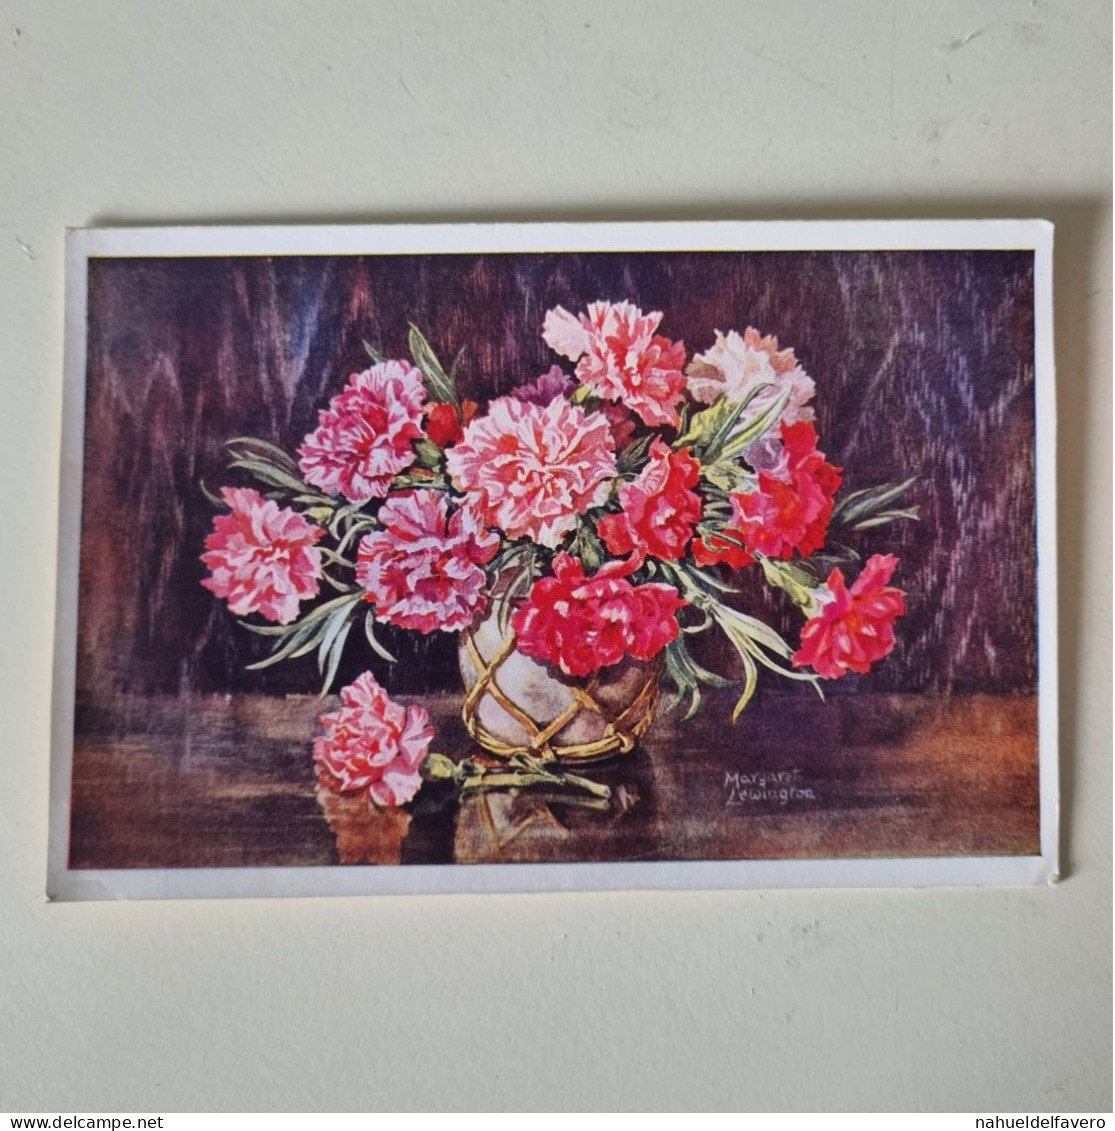 PH - PHOTO DESSINÉE - Couleur Des Photos - Fleurs Dans Un Vase - Objects